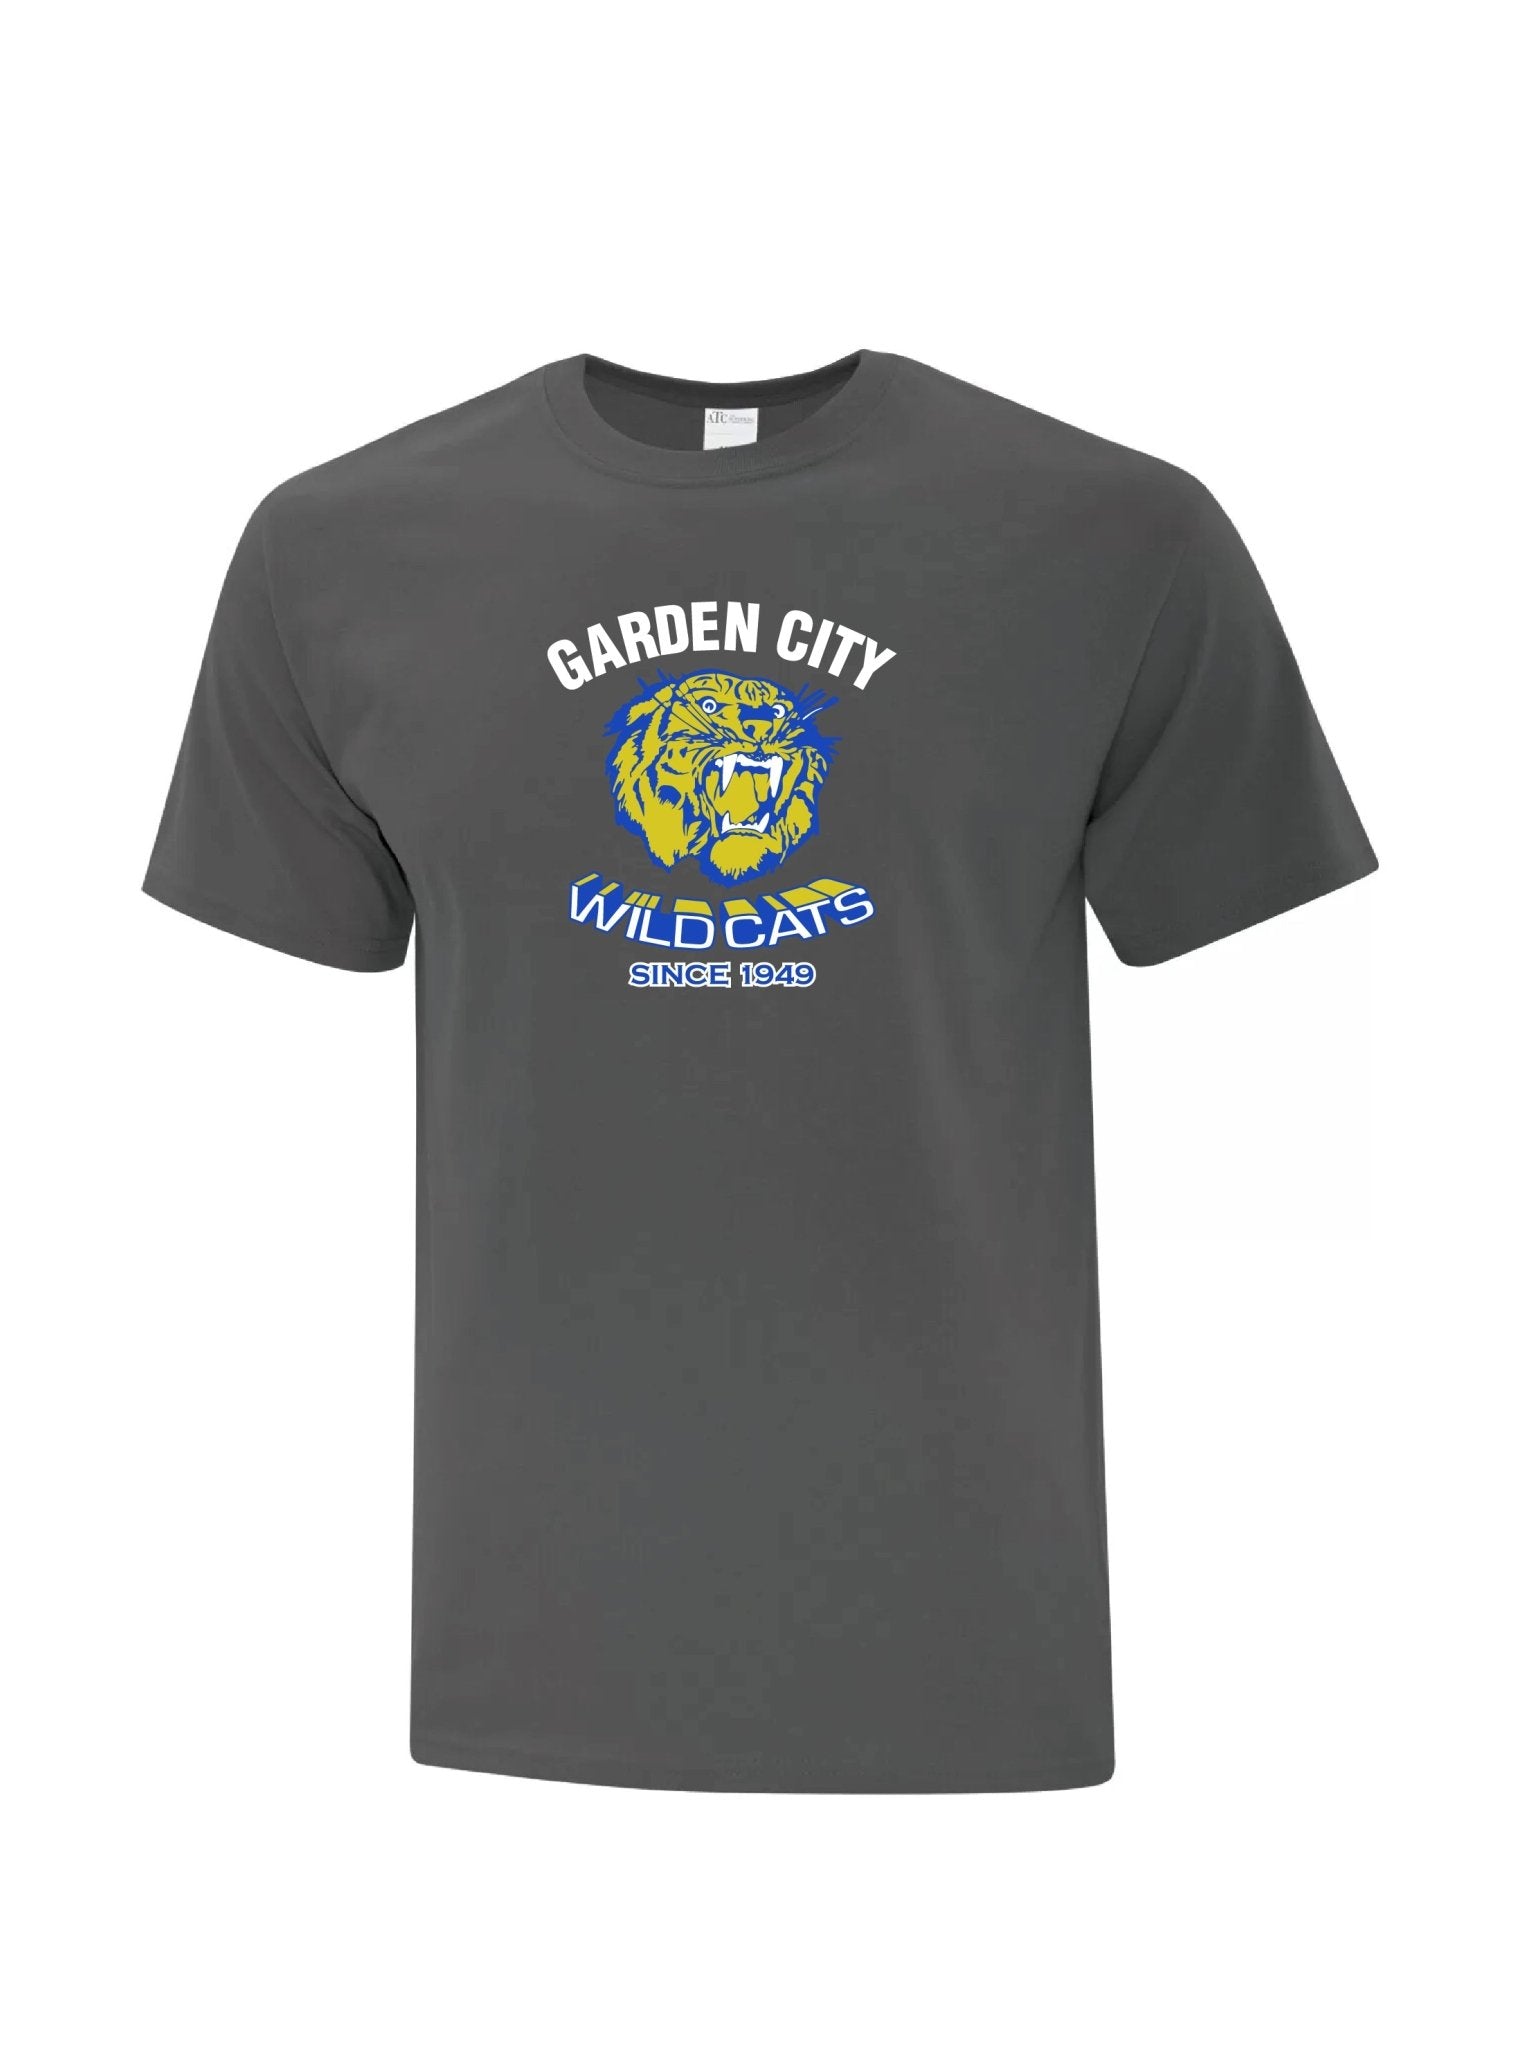 Youth Garden City Wildcats Since 1949 T-shirt - Oddball Workshop